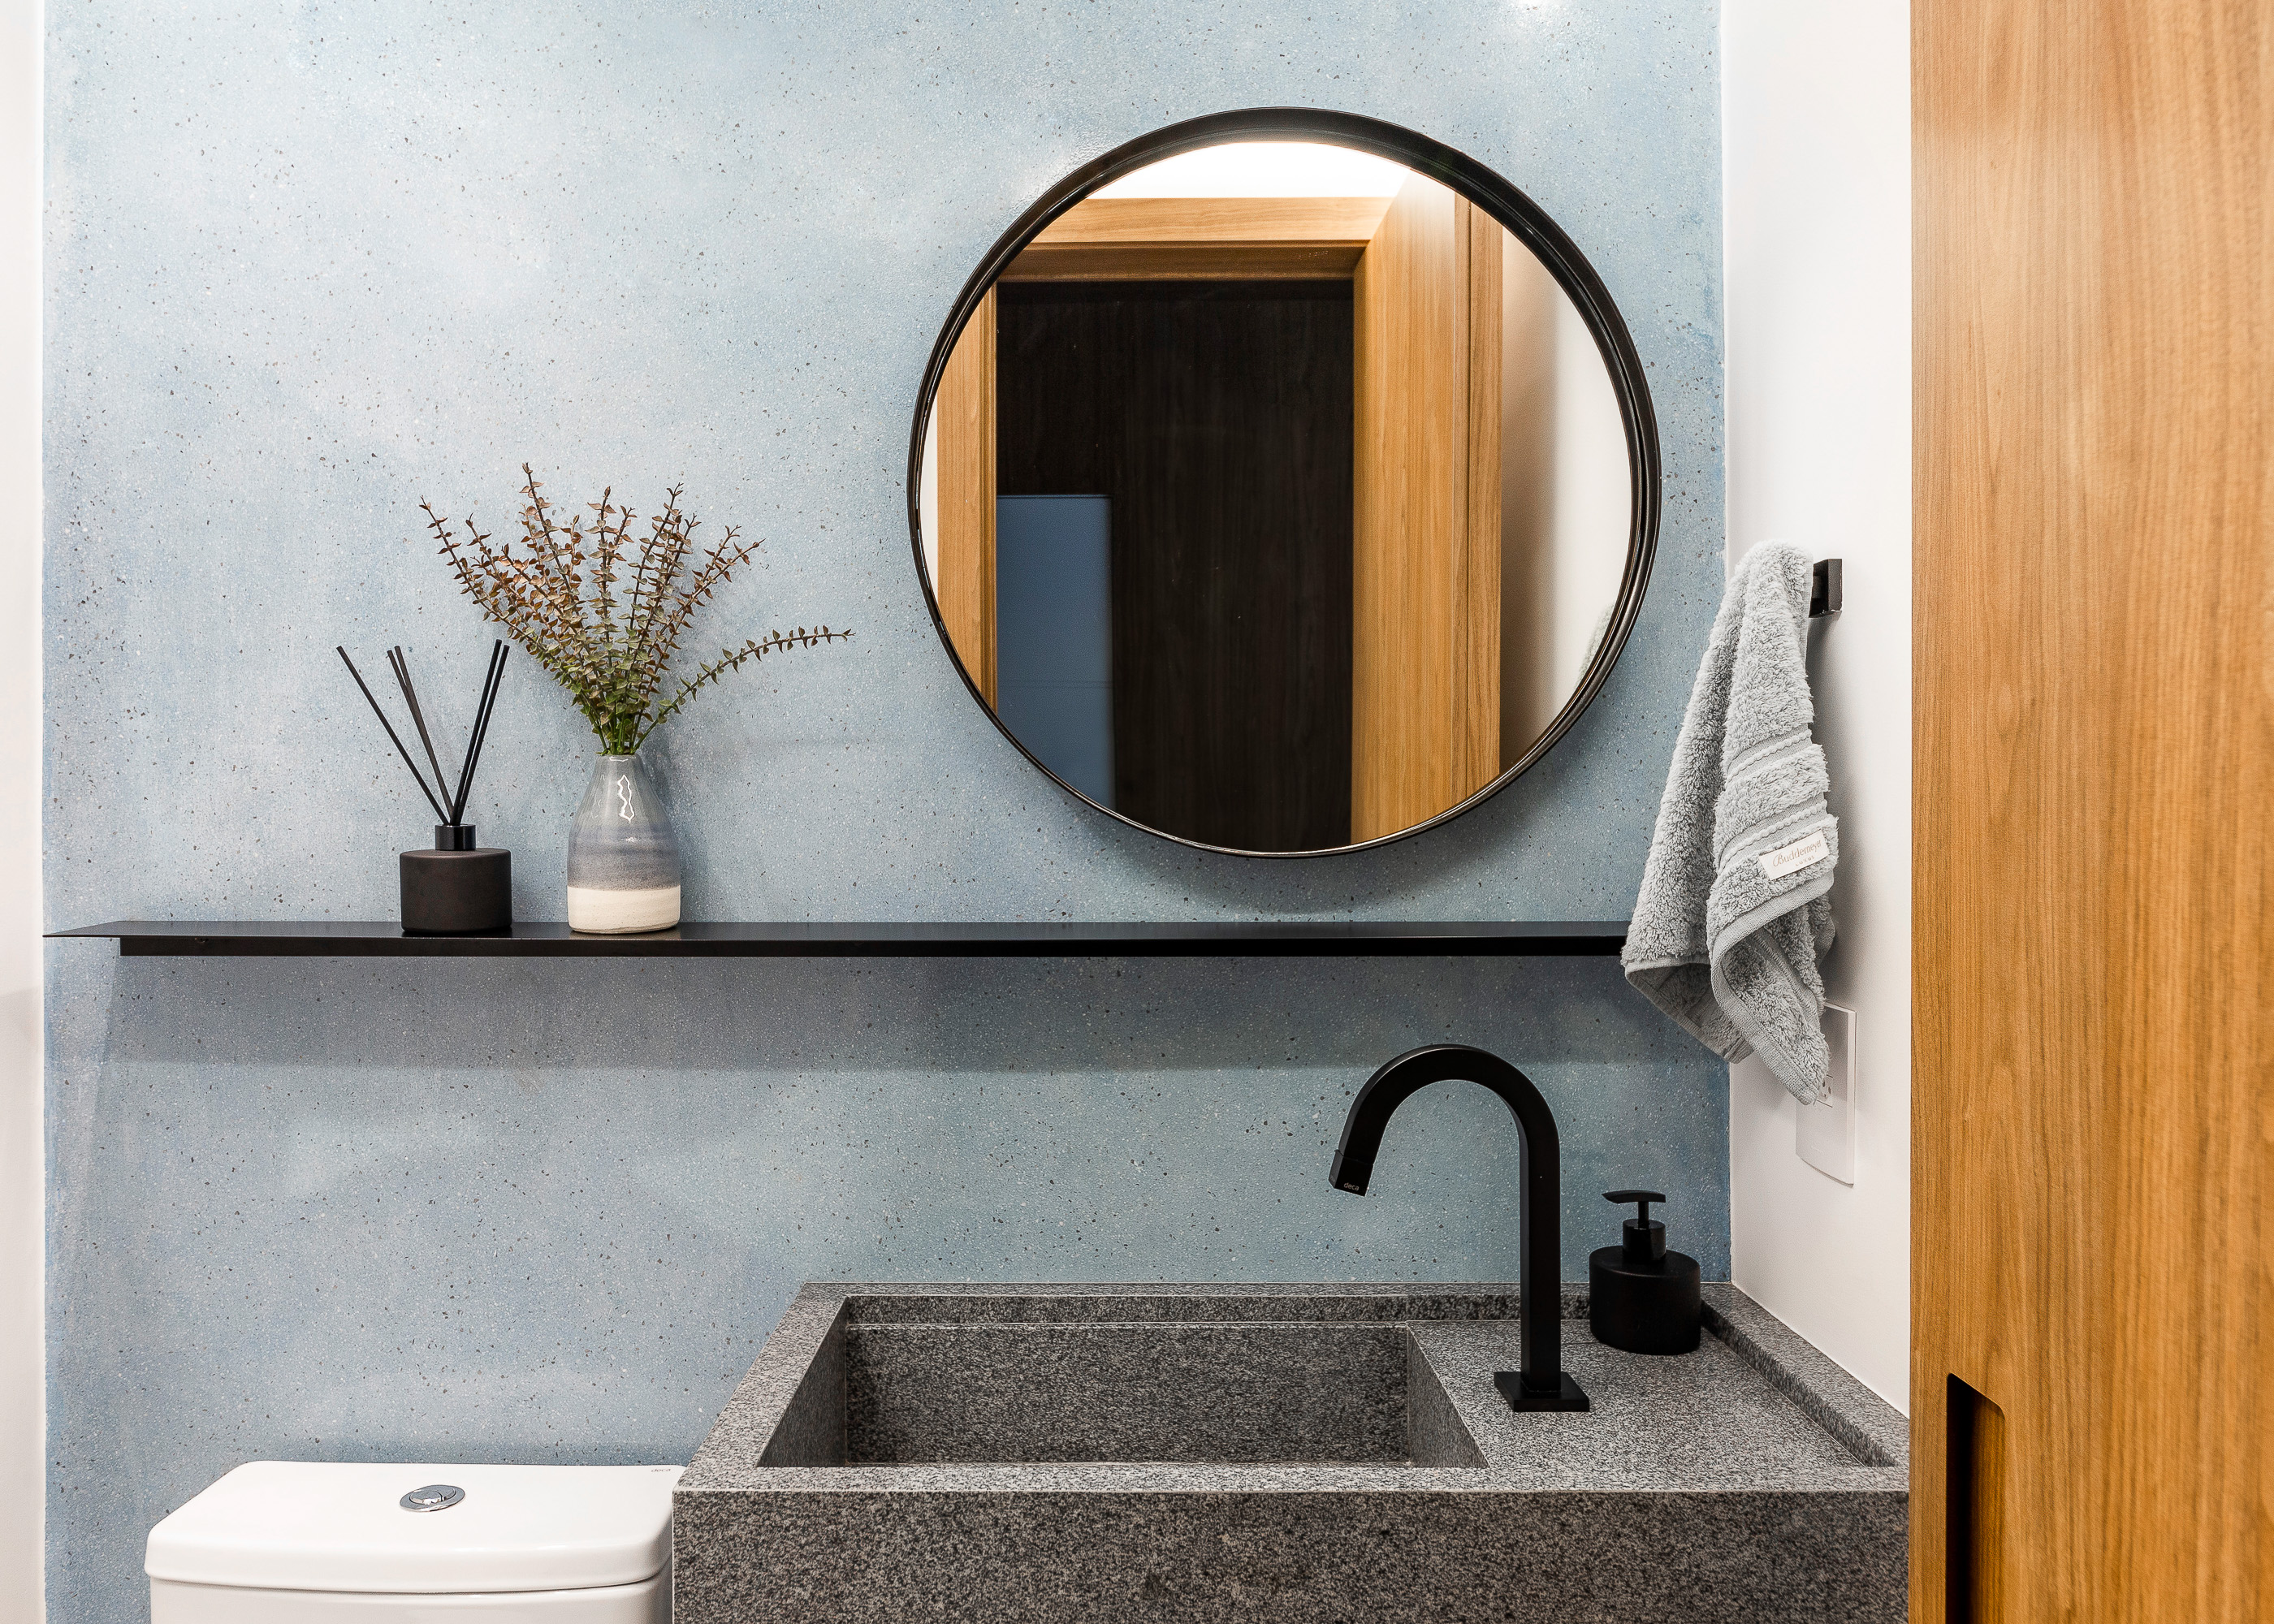 Lavabo com parede azul, espelho redondo e cuba esculpida.